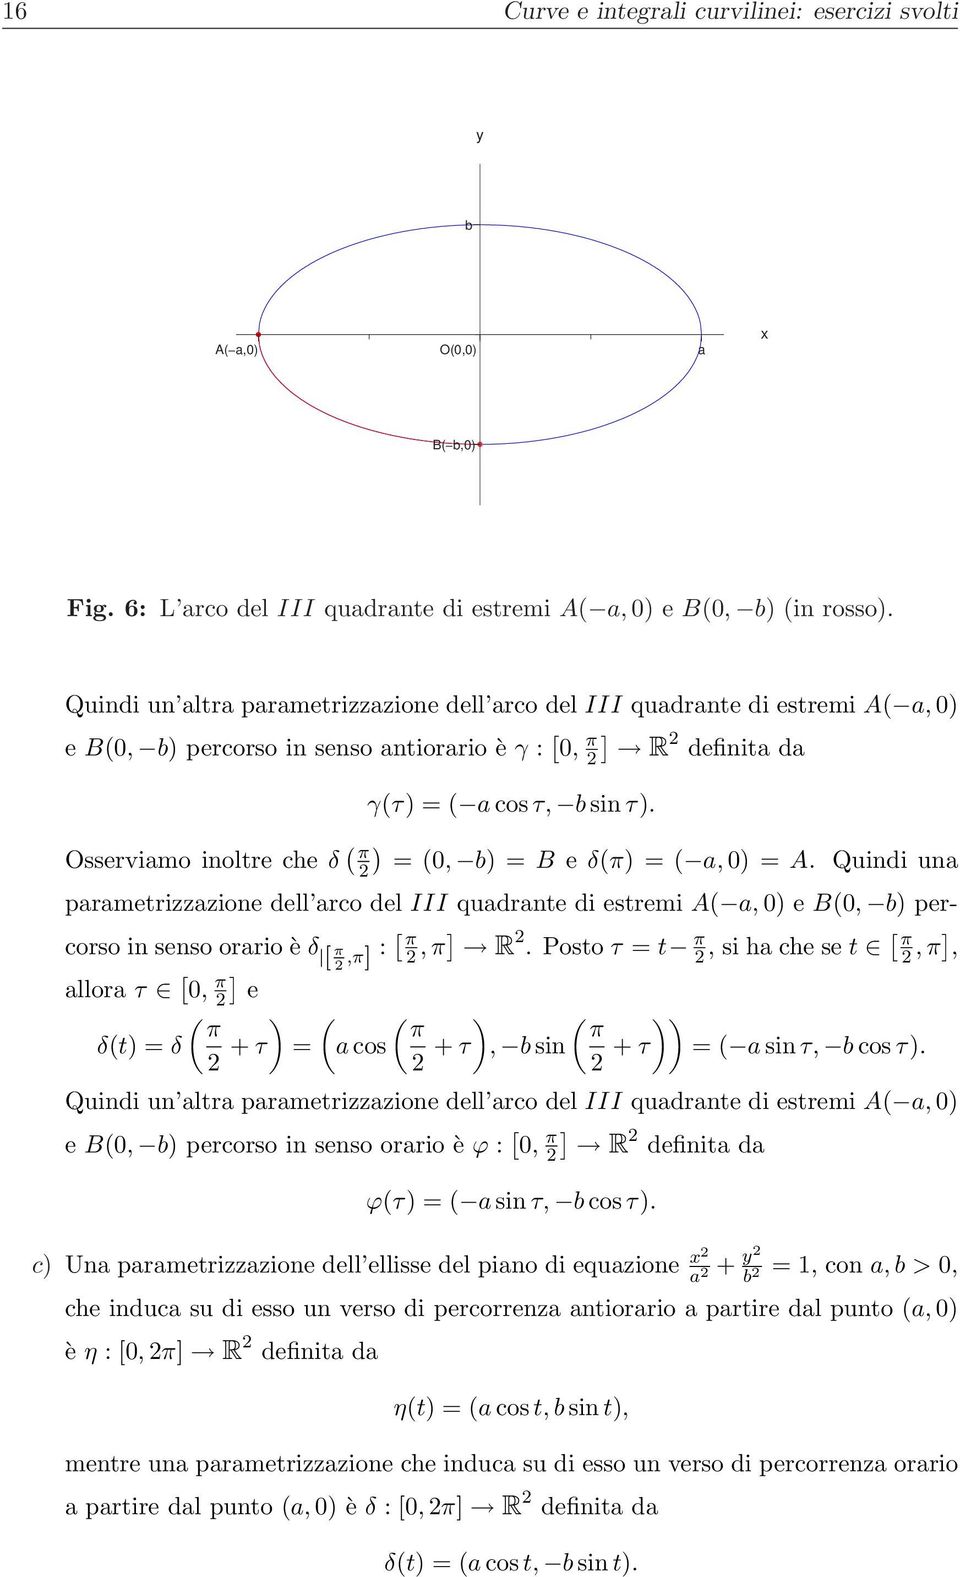 una parametrizzazione dell arco del III quadrante di estremi A a, e B, b percorso in senso orario è δ π,π : π, π R.